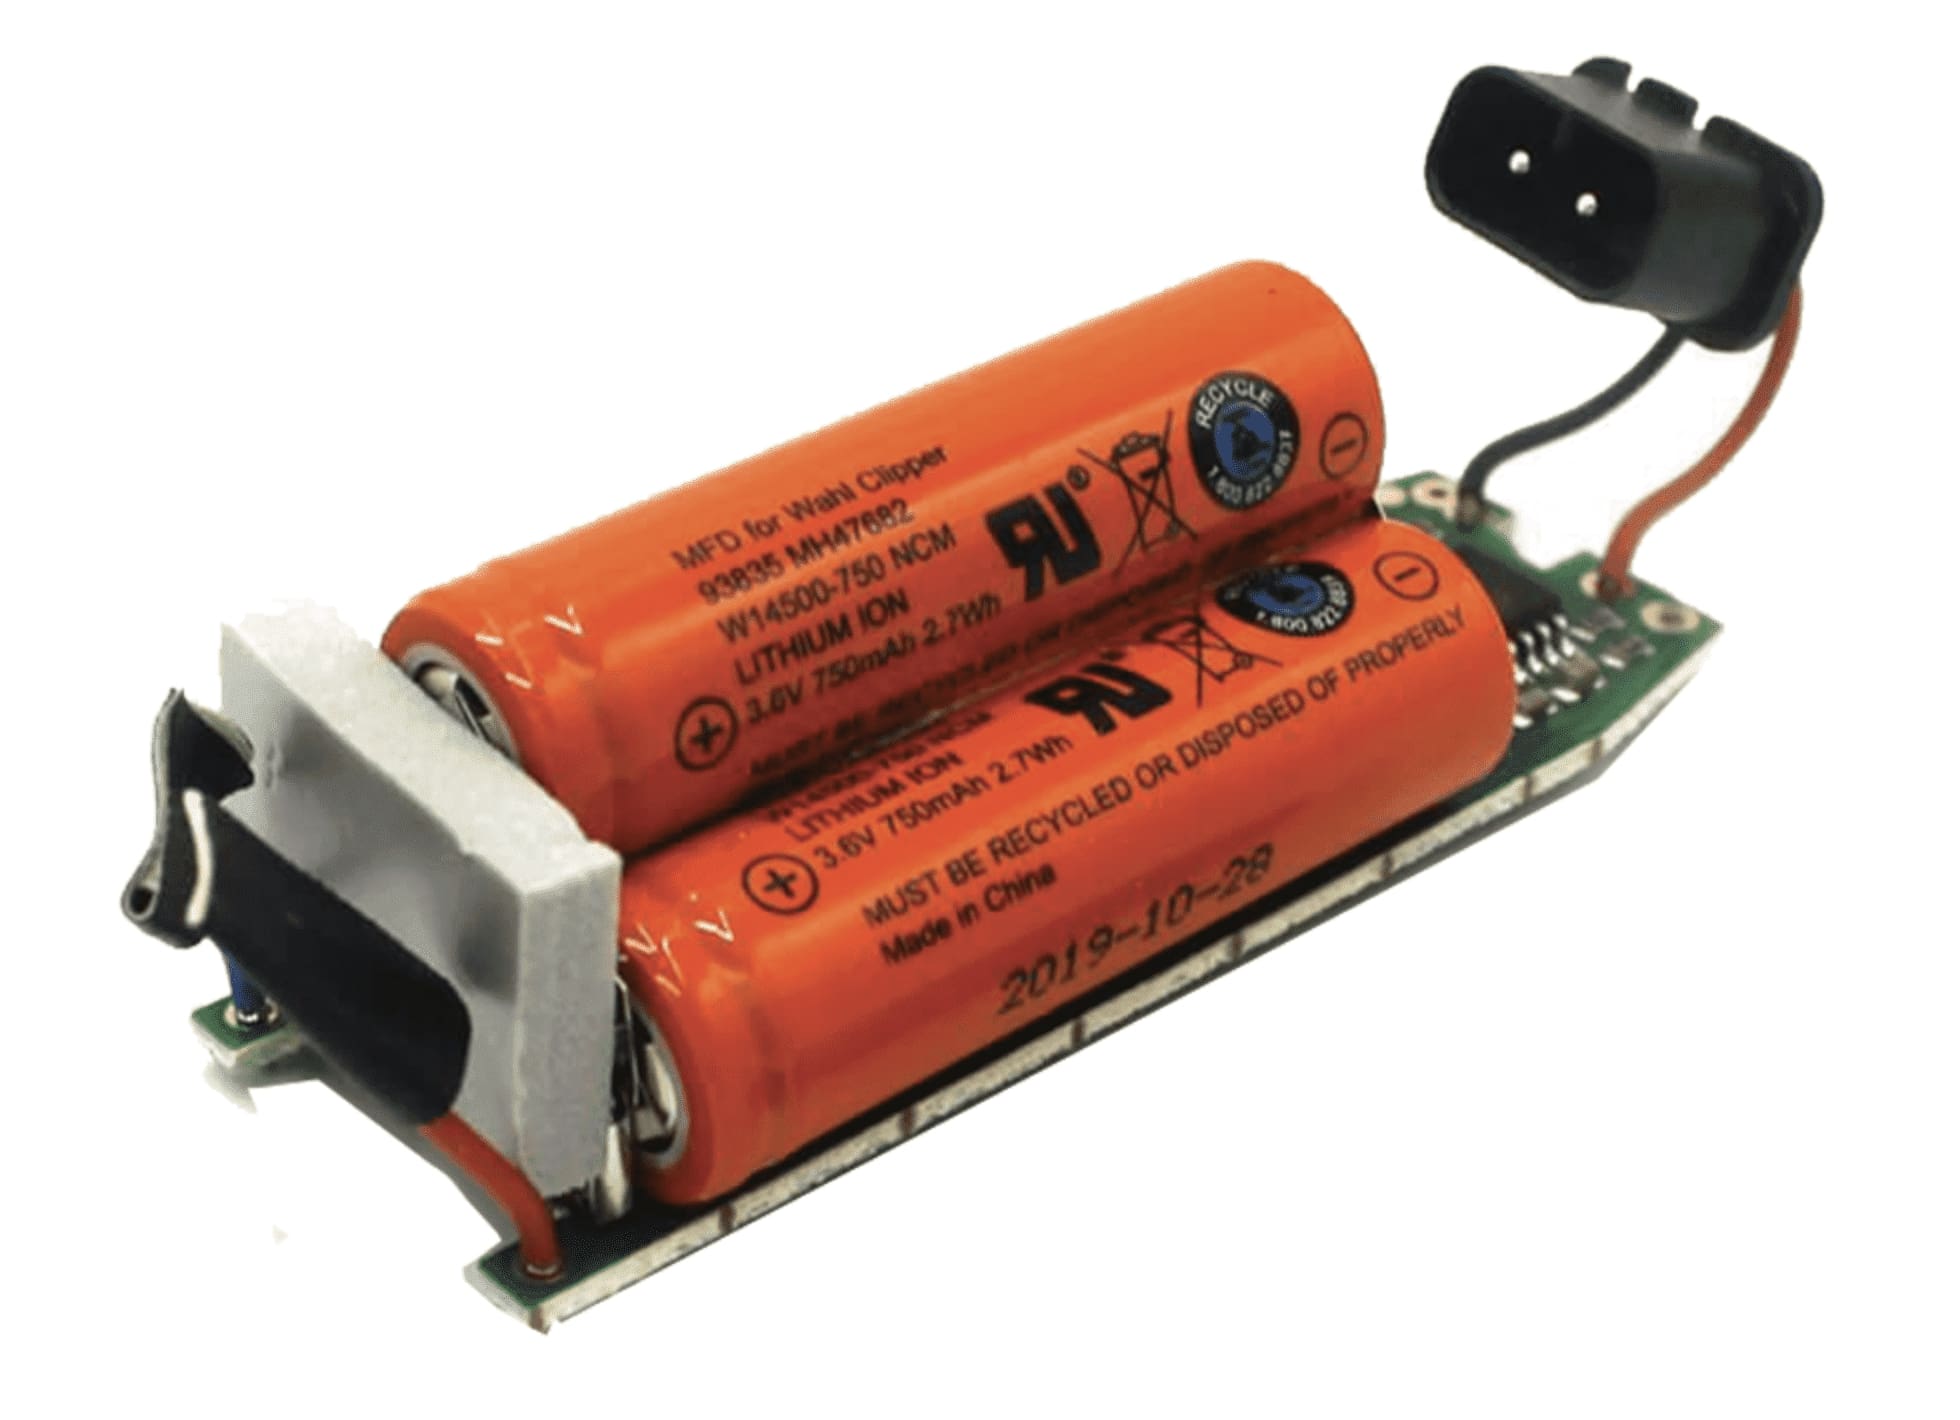 Moser - náhradní baterie pro strojek Moser 1871 -7961 PRO + elektronická základová deska